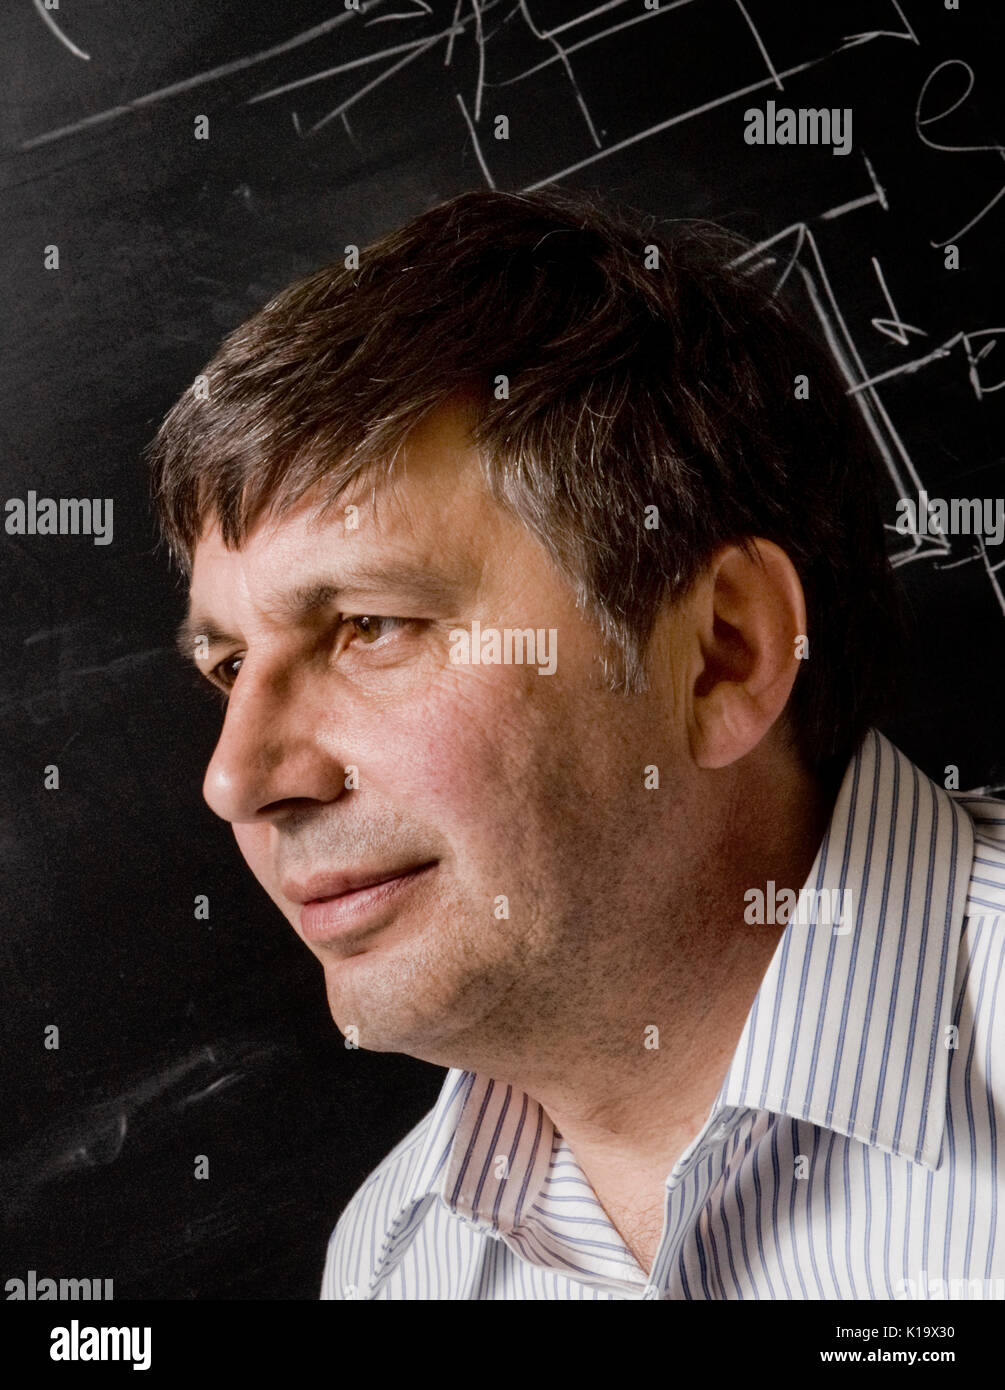 Ritratto del professor André Konstantin Geim, che ha ricevuto il Premio Nobel per la fisica 2010. Foto Stock